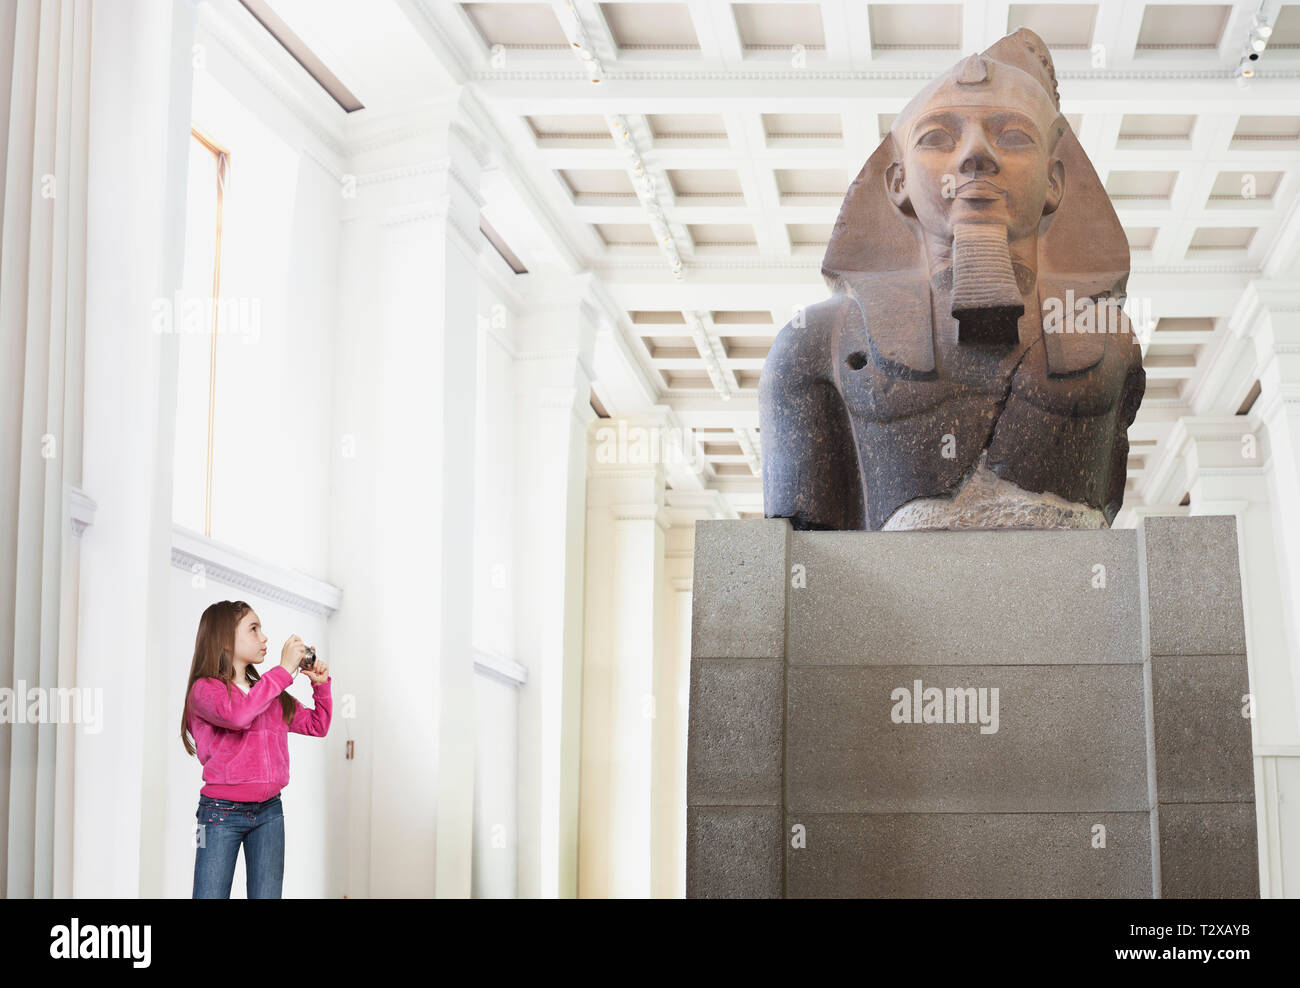 Jeune fille de photographier une statue dans un musée Banque D'Images